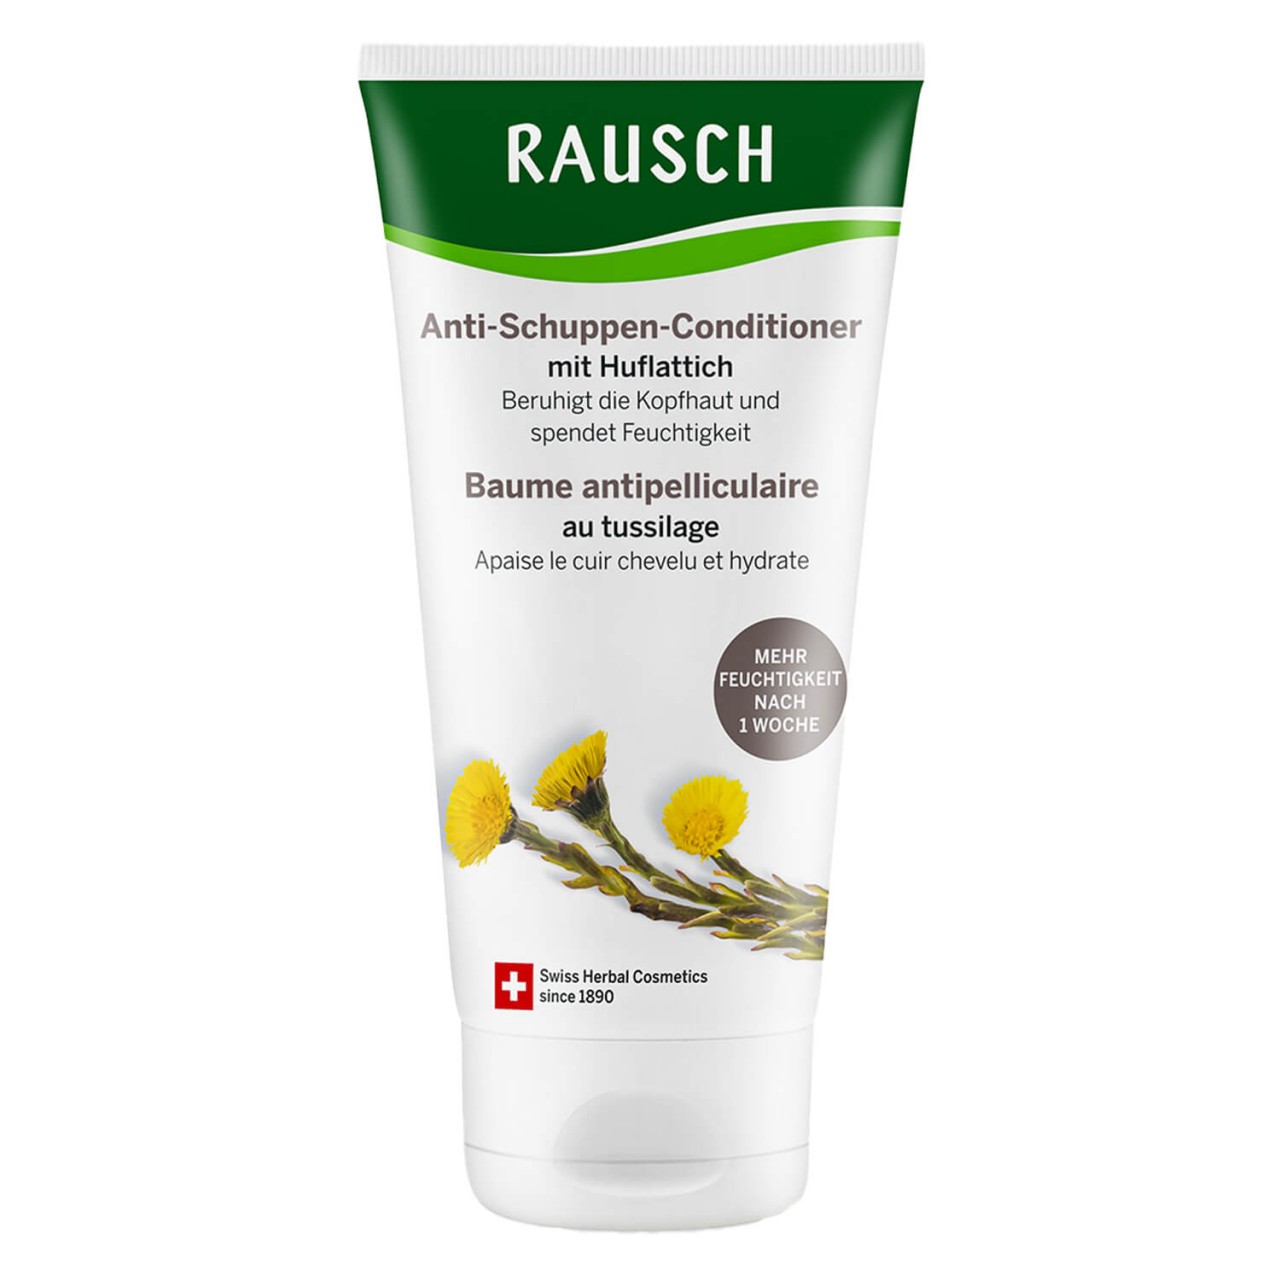 Huflattich - Anti-Schuppen-Conditioner von RAUSCH